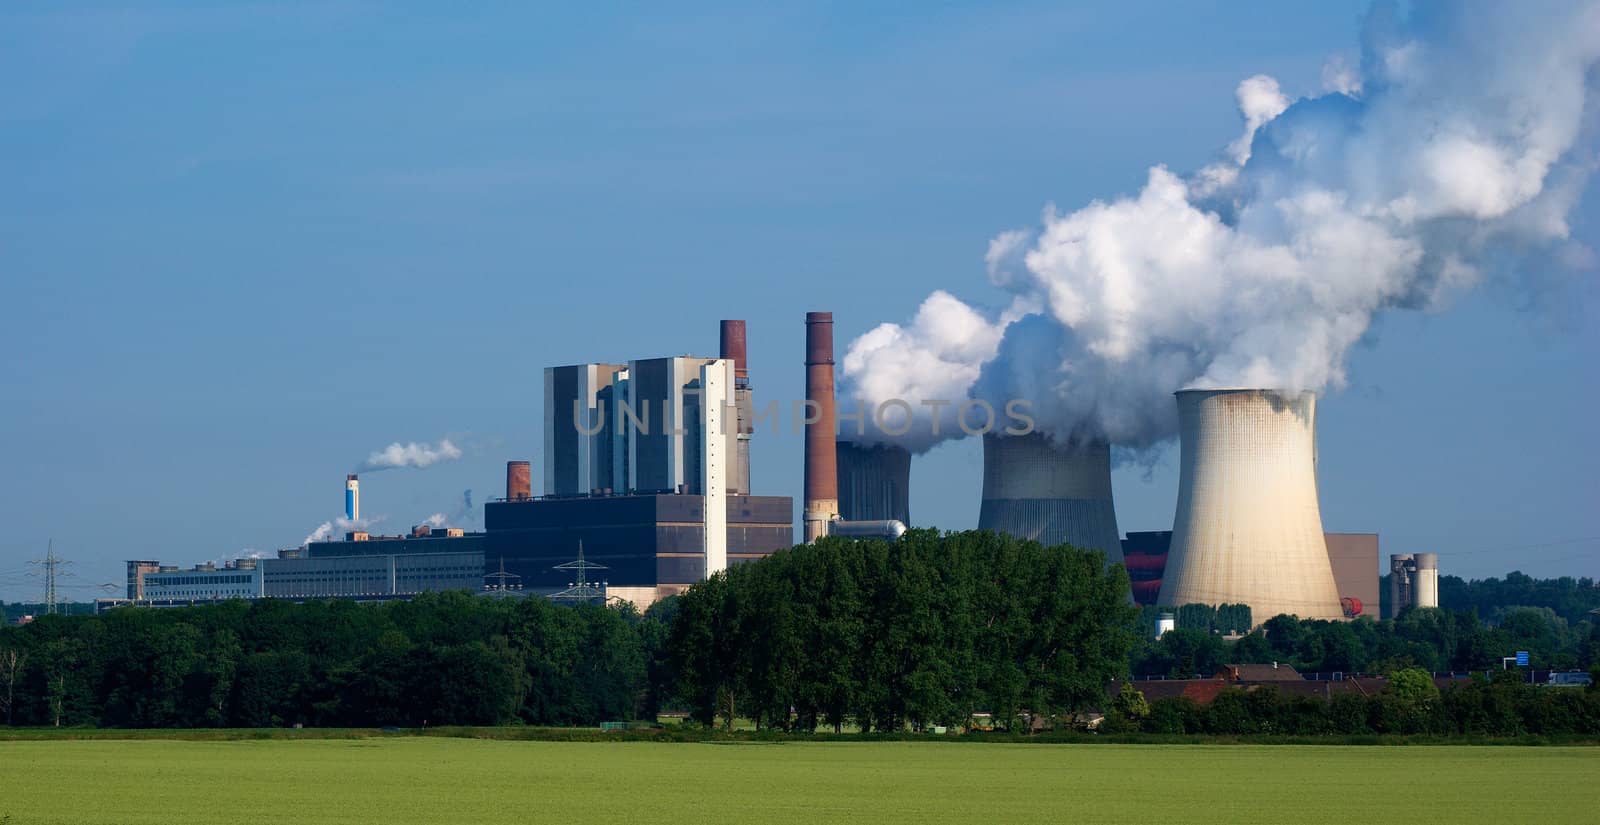 Power plant Weisweiler in North Rhein-Westfalia, Germany.